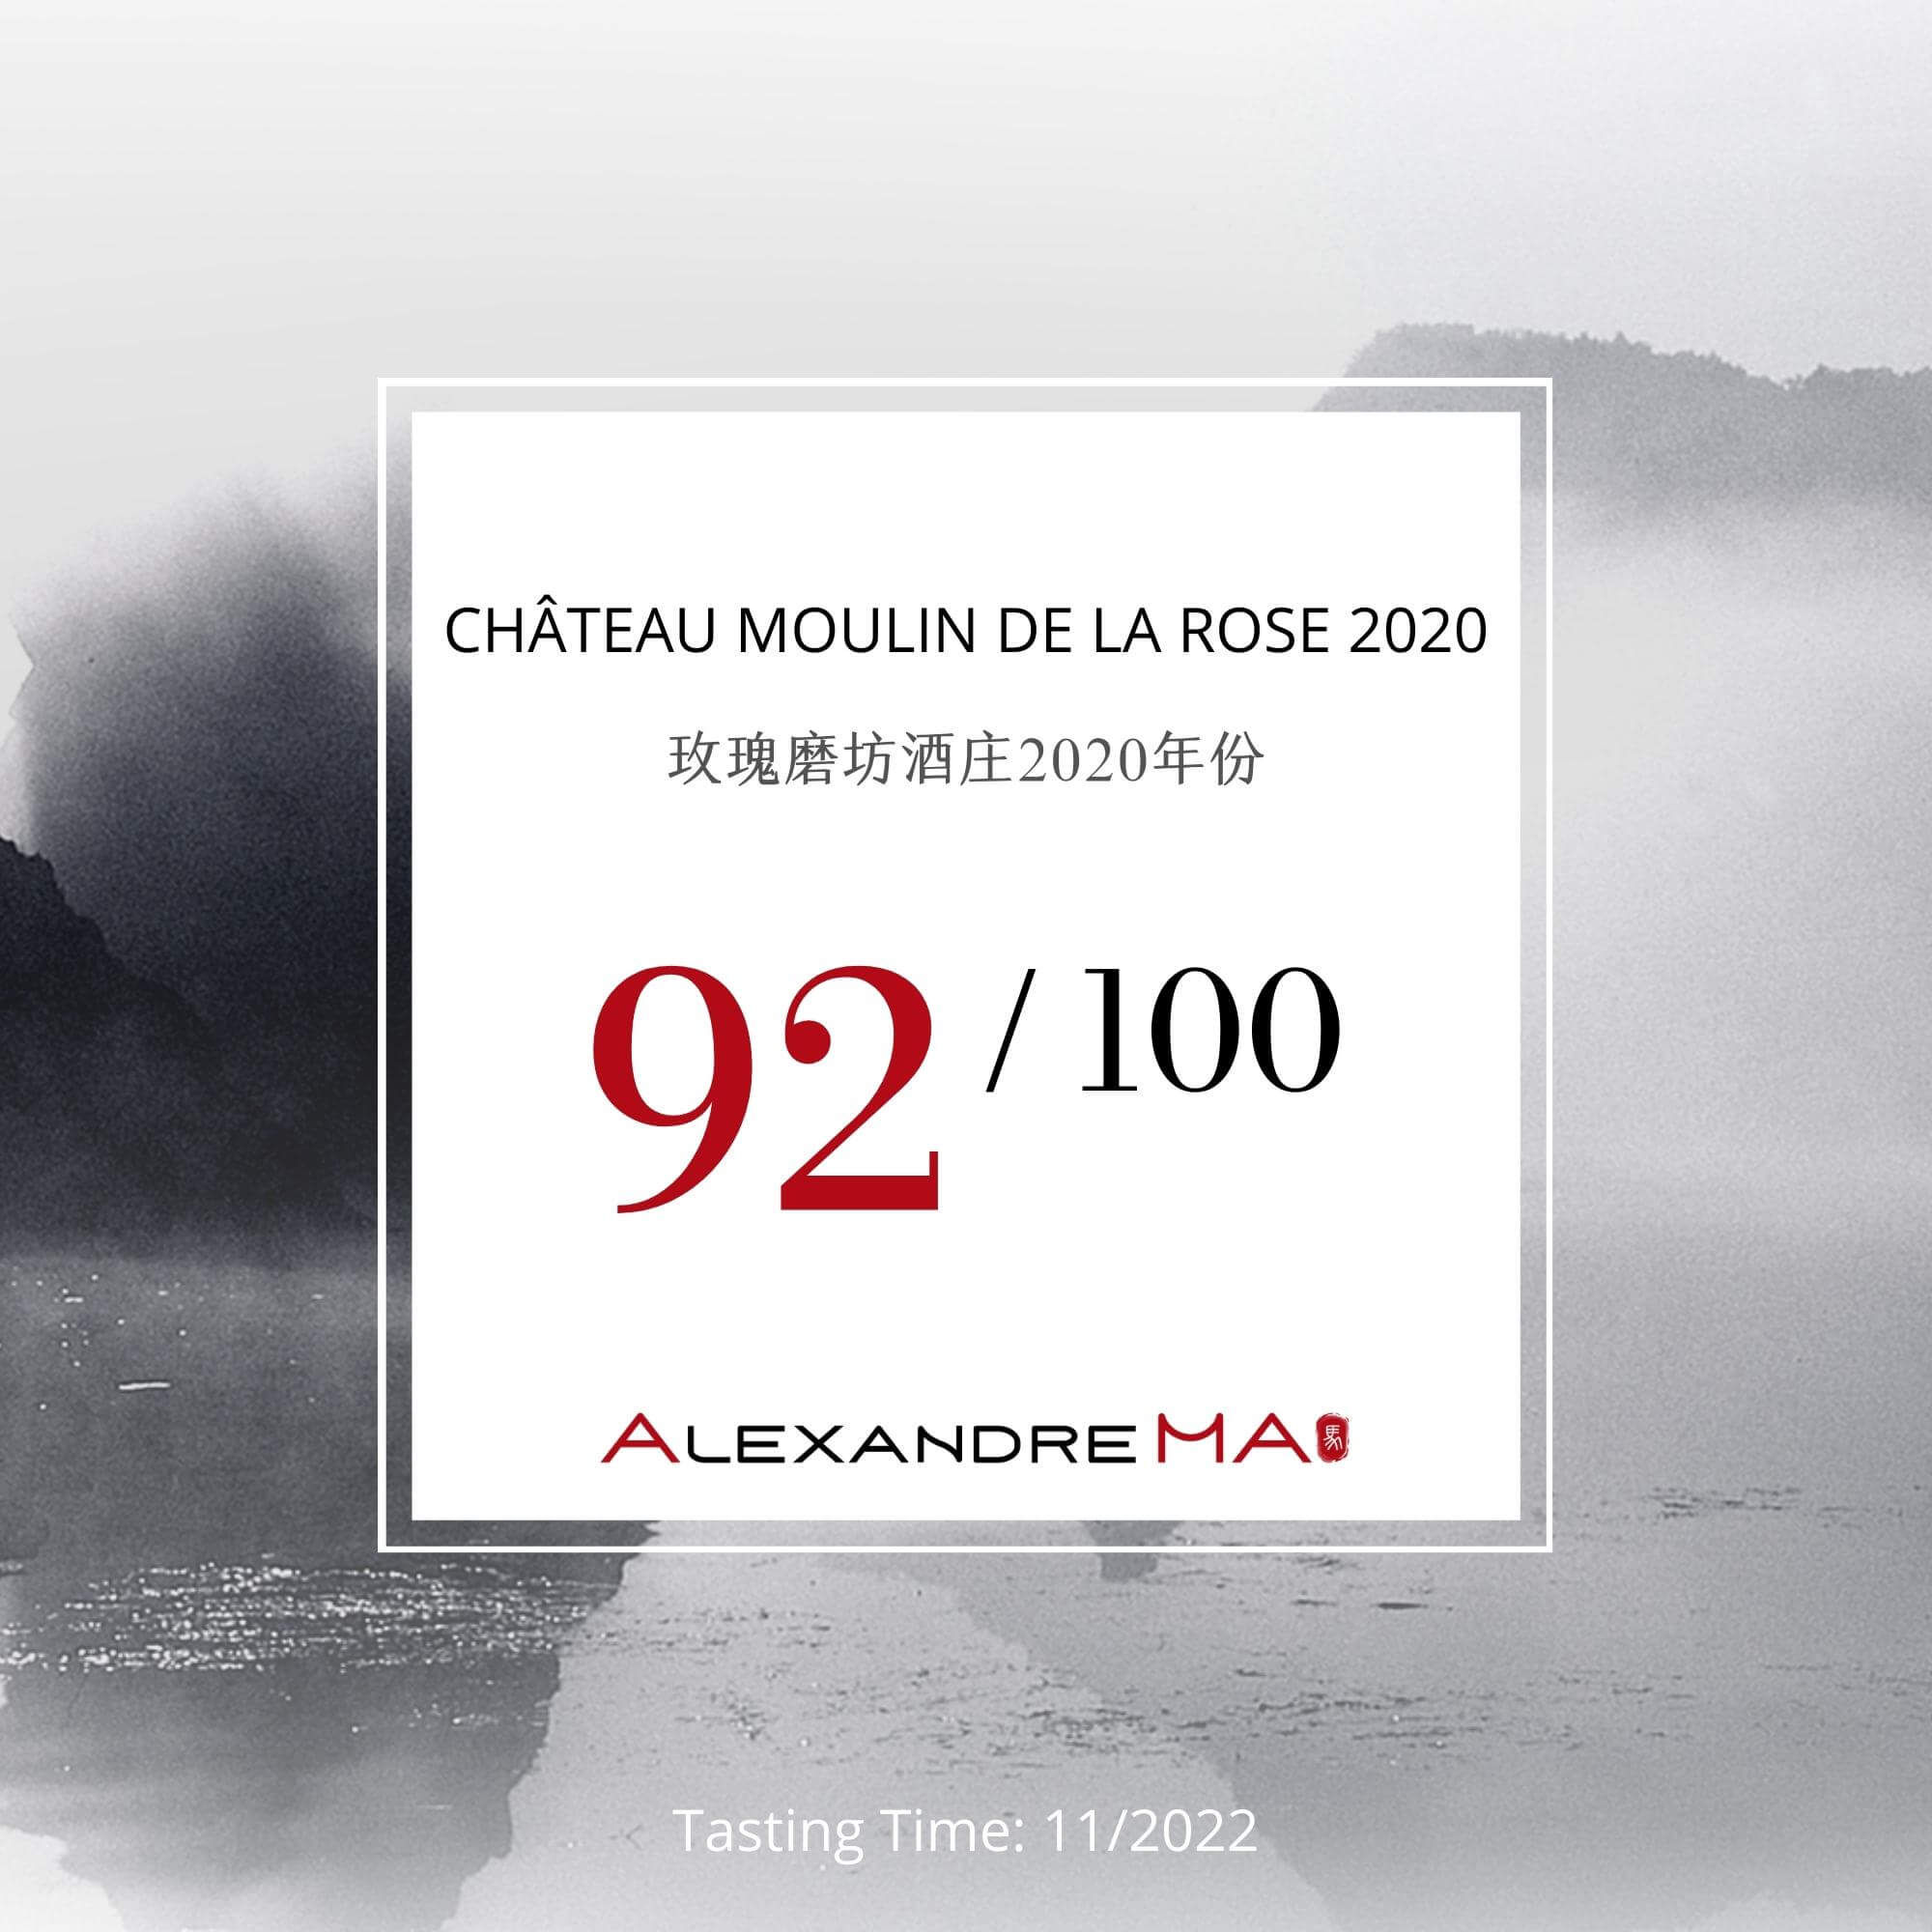 Château Moulin de la Rose 2020 - Alexandre MA